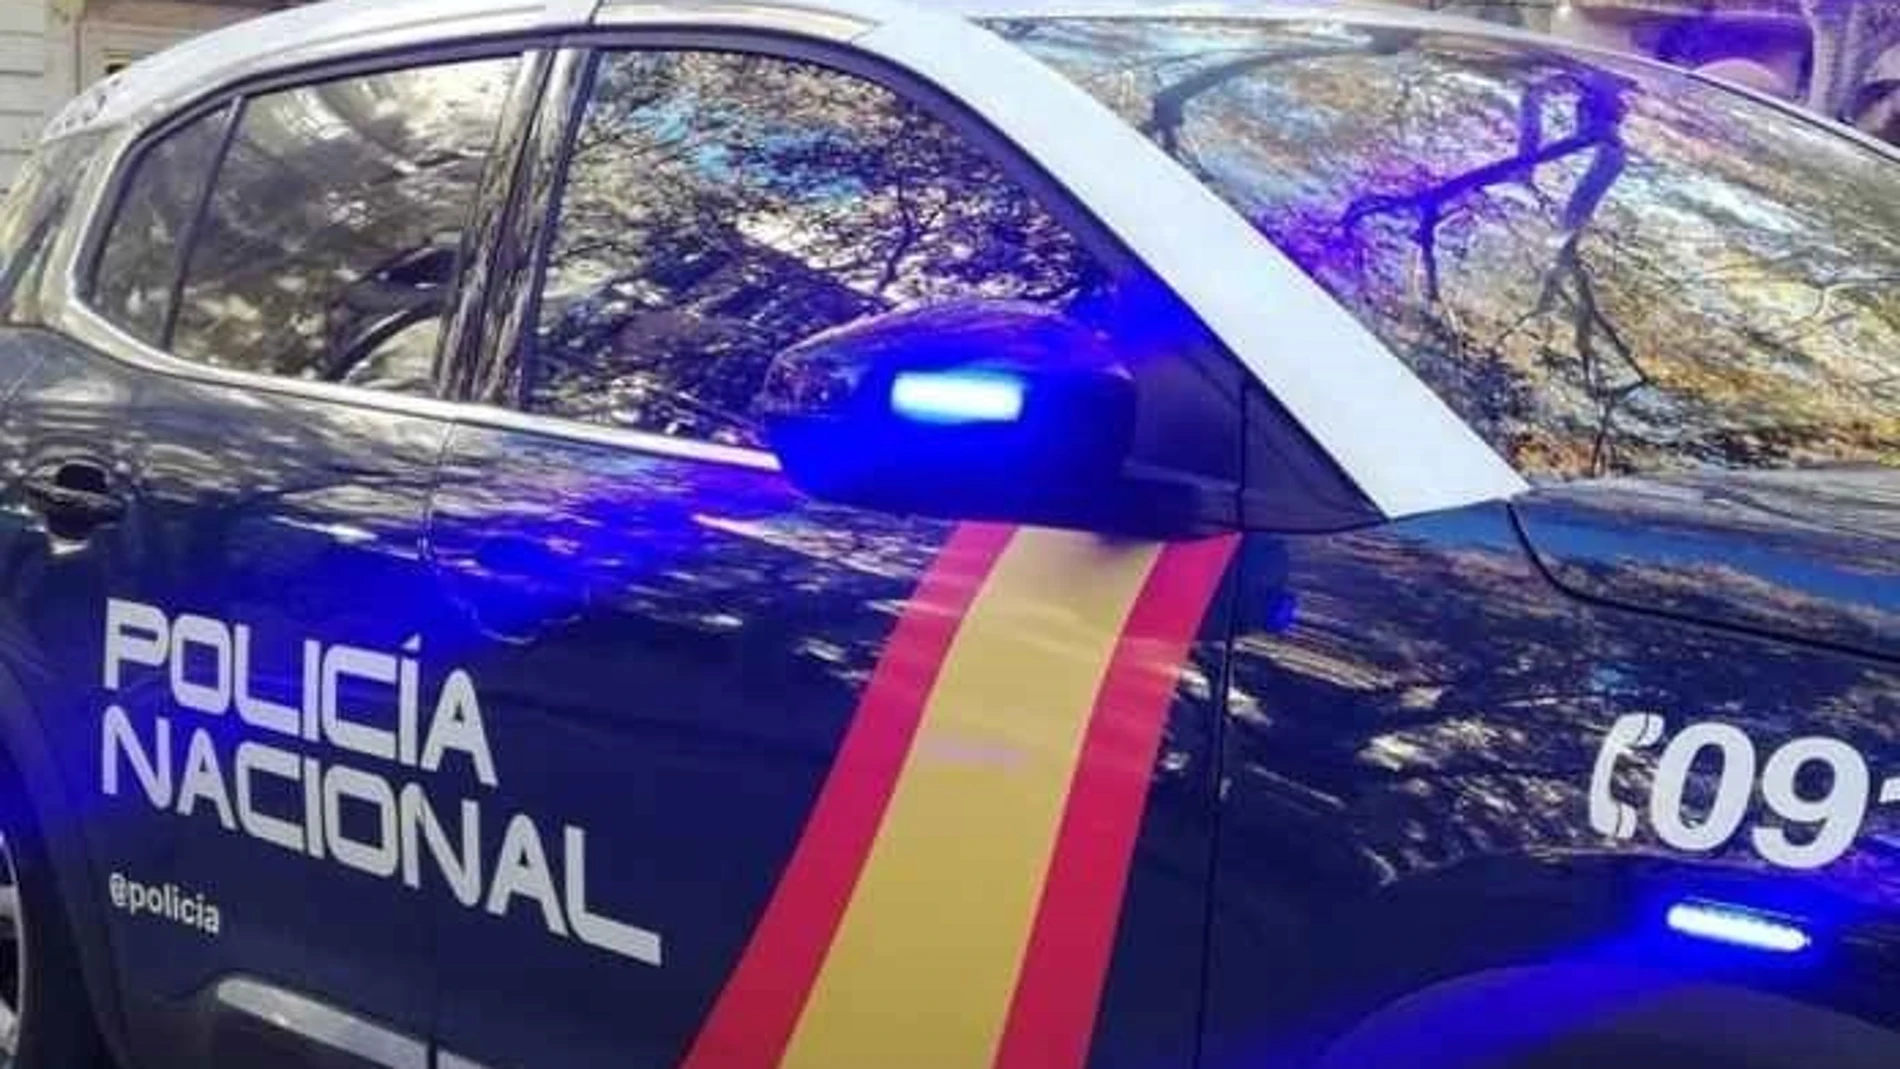 Agentes de la Policía Nacional detuvieron al supuesto agresor el pasado miércoles